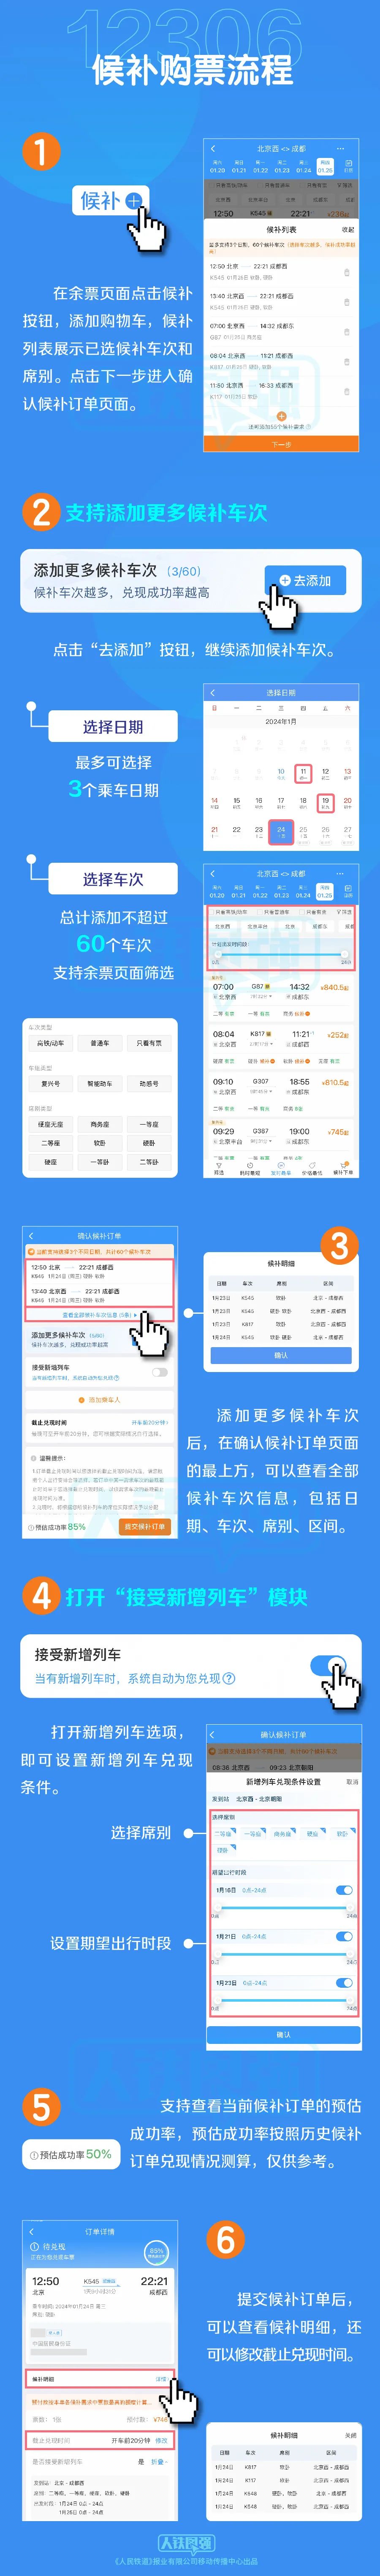 金华新闻客户端app川观察新闻客户端app